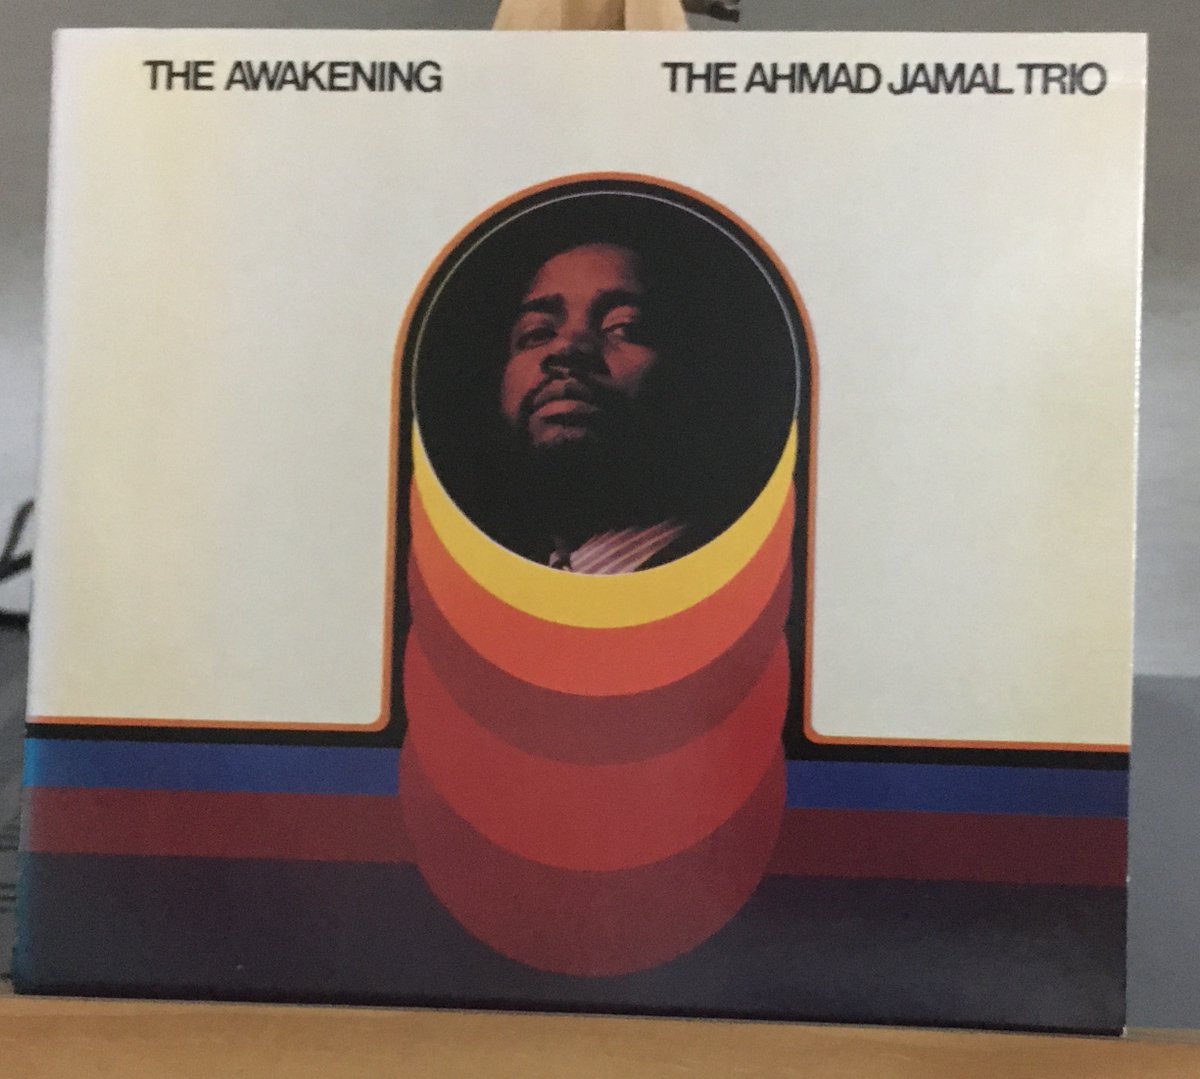 明日からの１週間に備えての１枚はアーマッド・ジャマルの1970年のオシャレなピアノで。聴きながらちょっどだけ飲んで寝ましょう。
THE AWAKENING, THE AHMAD JAMAL TRIO